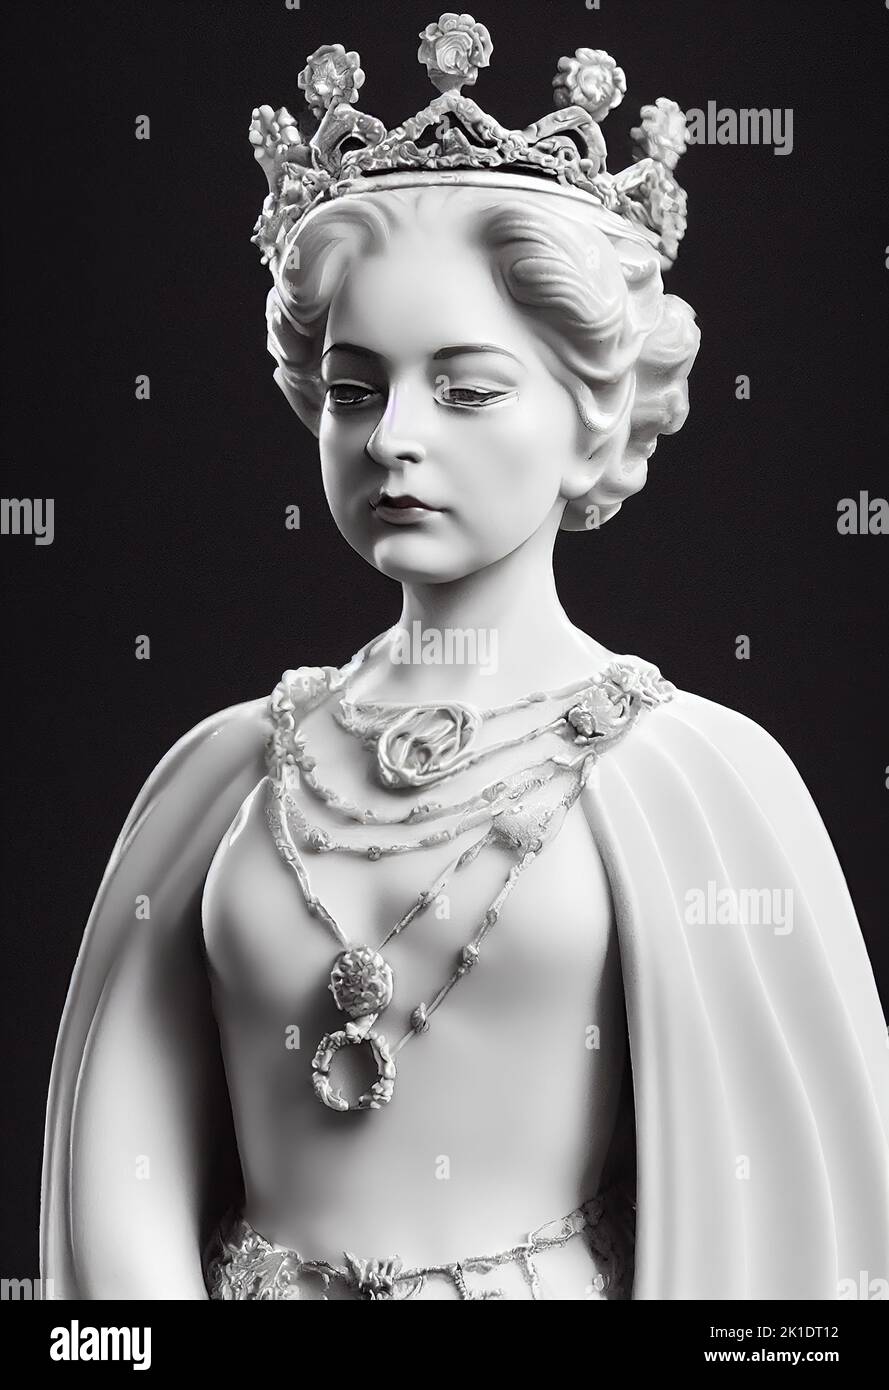 Une figurine verticale en argile à niveaux de gris de la jeune reine Elizabeth II dans sa couronne Banque D'Images